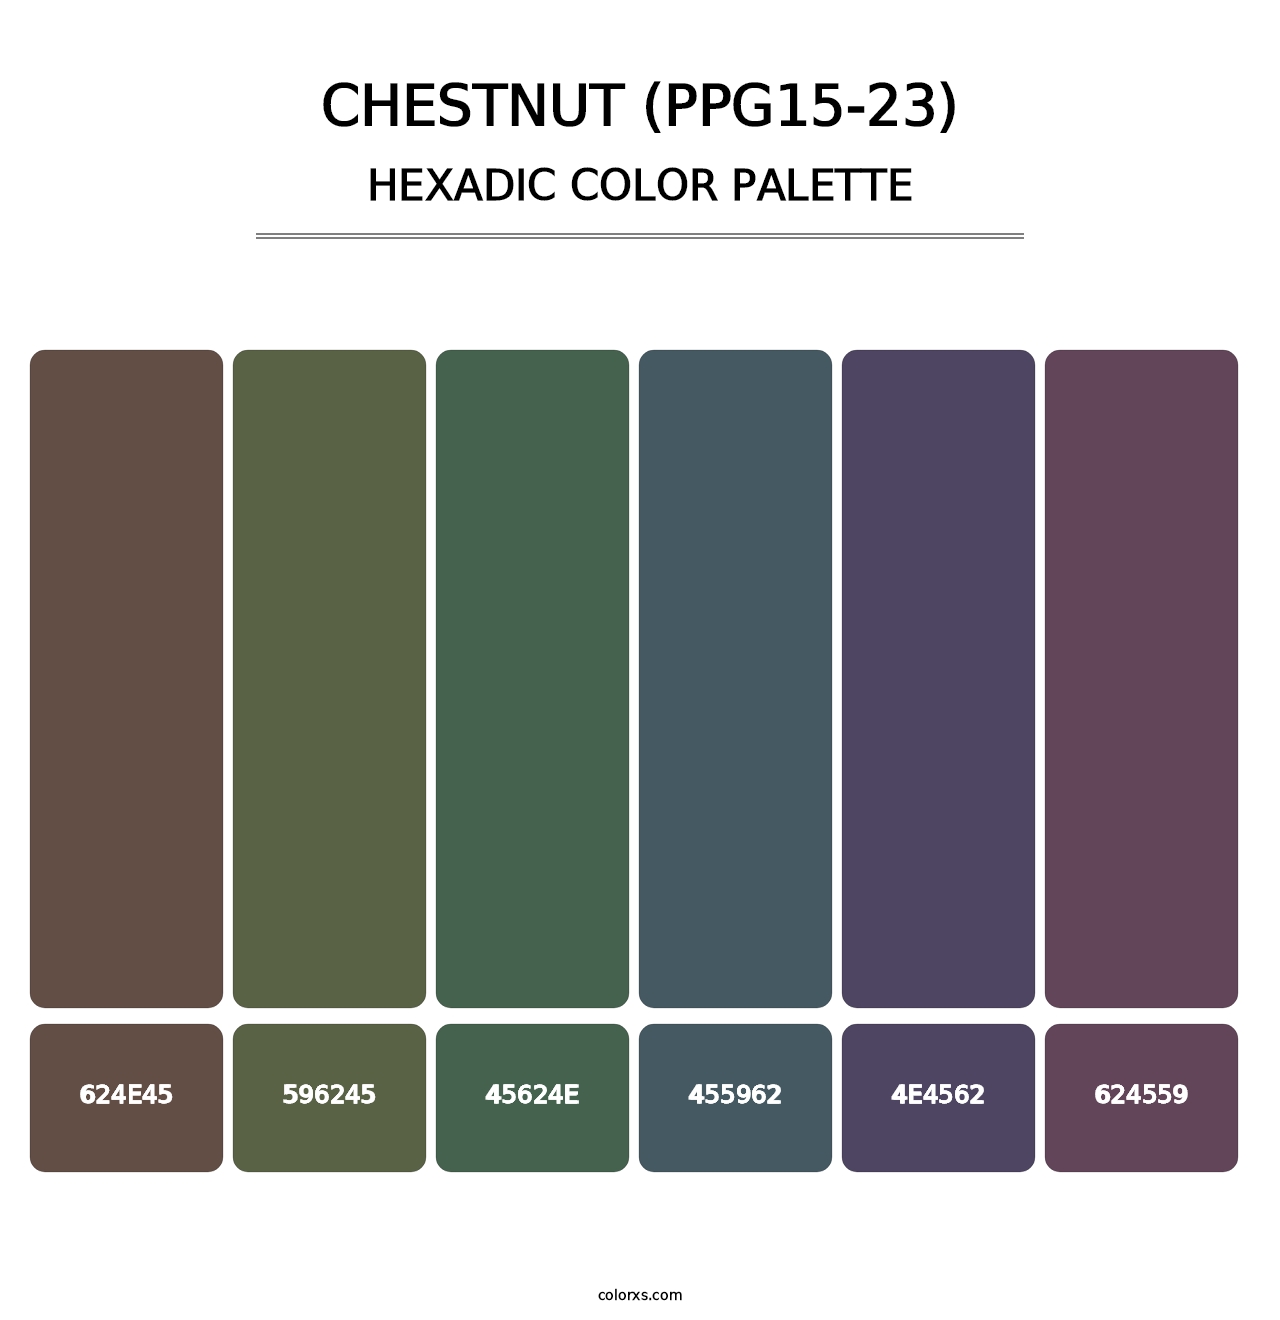 Chestnut (PPG15-23) - Hexadic Color Palette